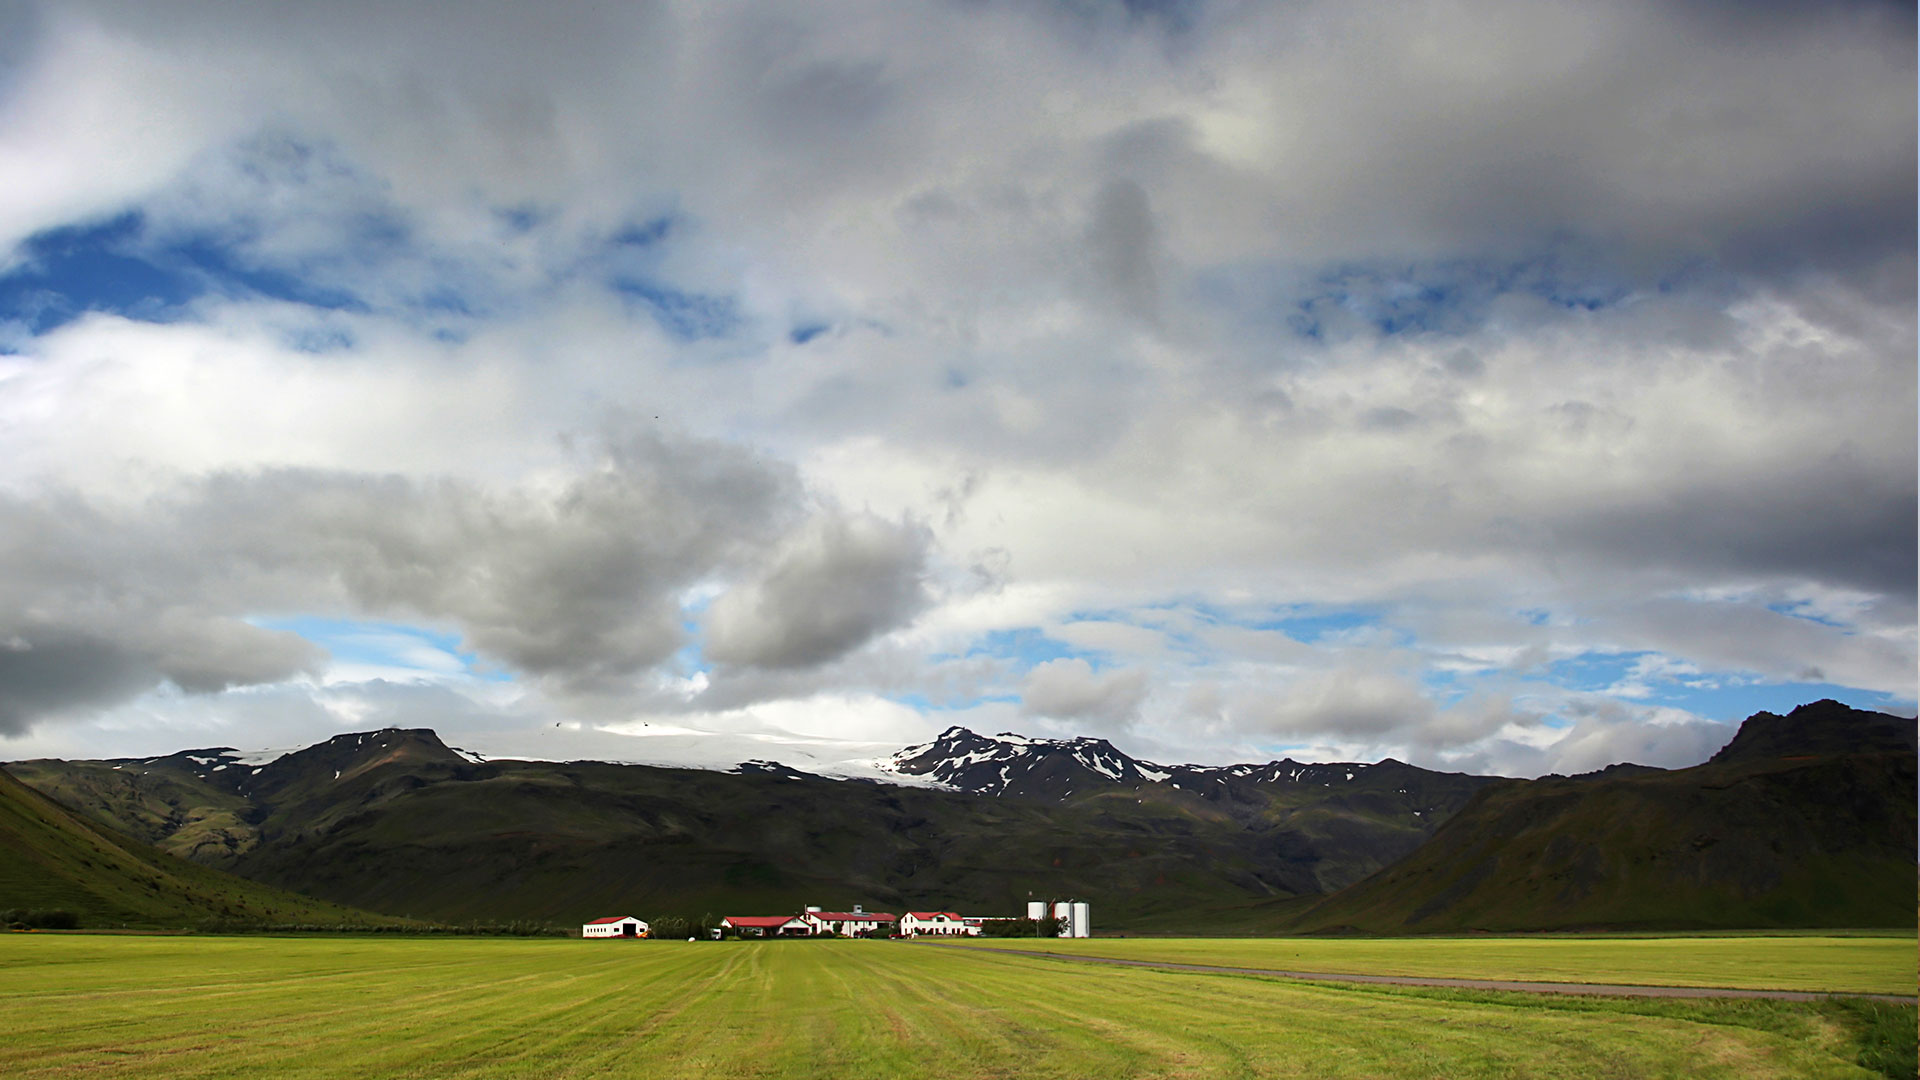 Eyjafjallajökull in South Iceland